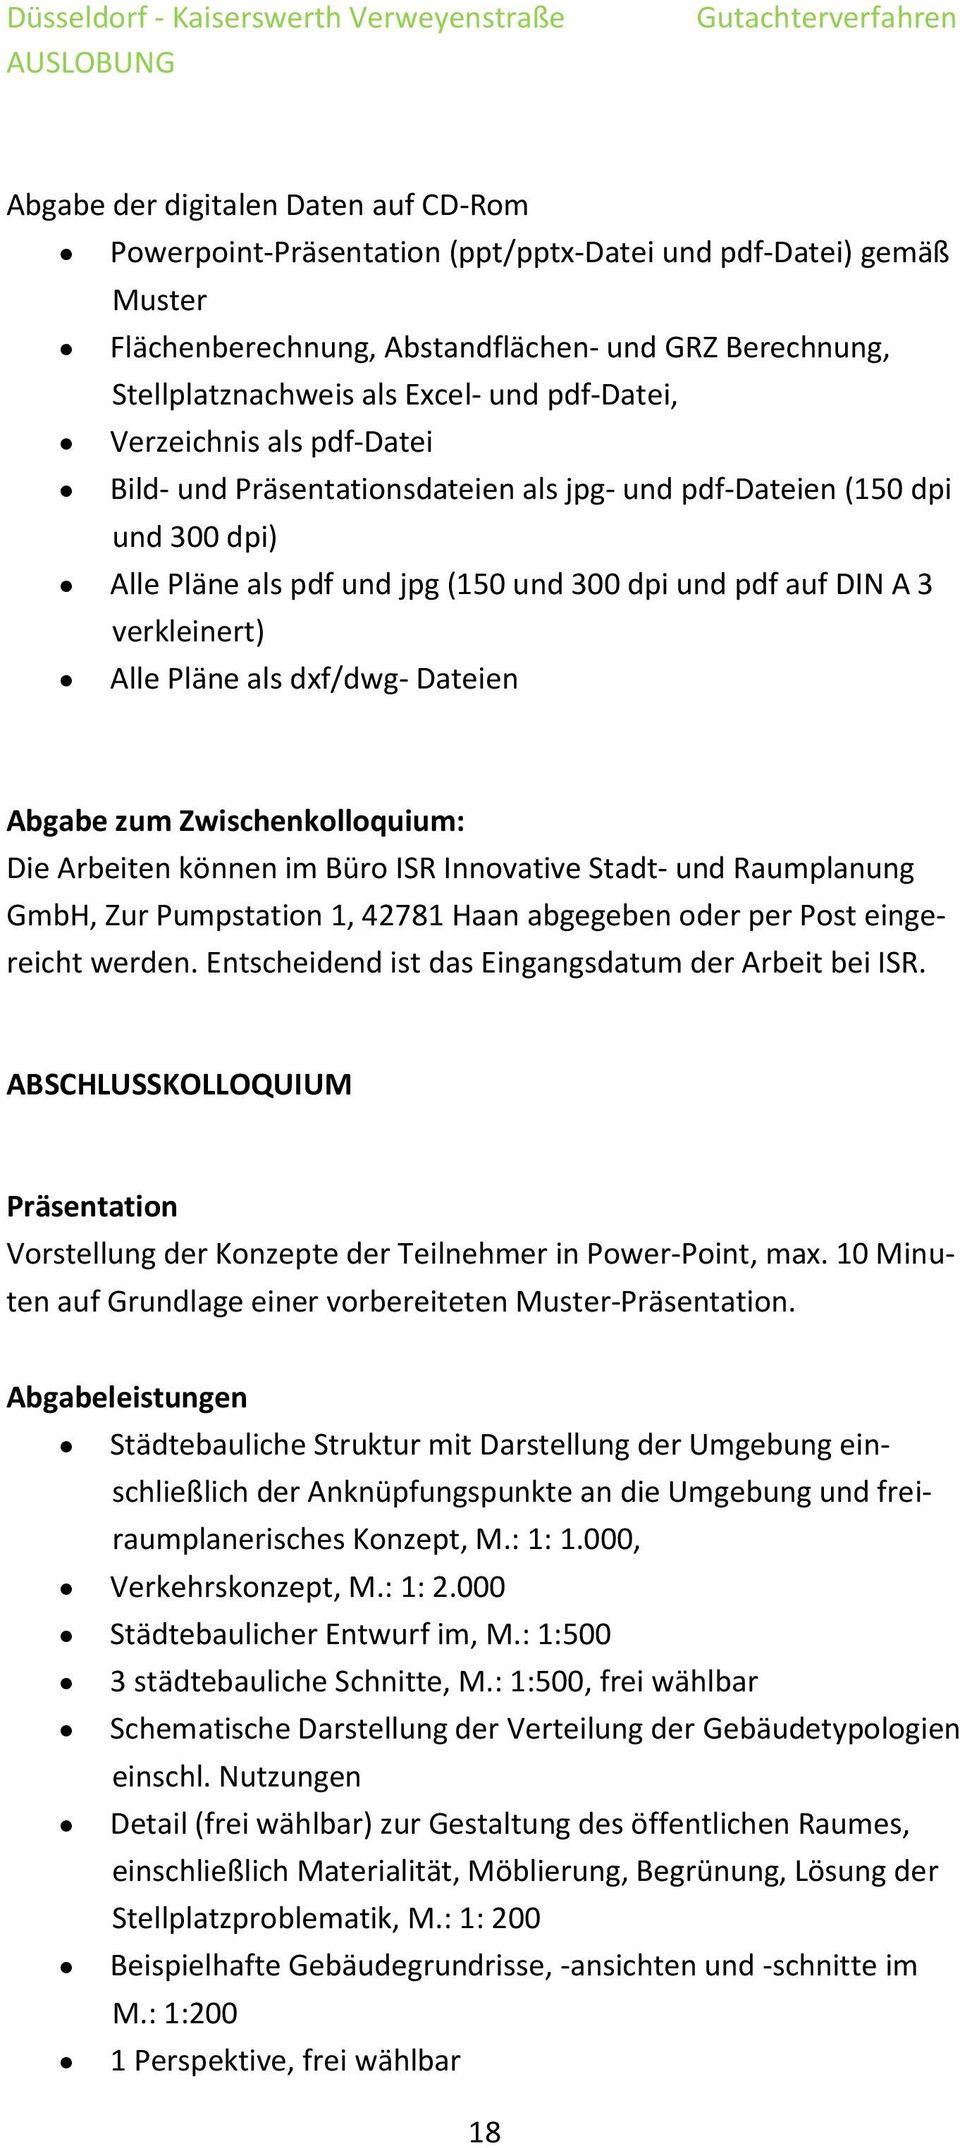 Pläne als dxf/dwg- Dateien Abgabe zum Zwischenkolloquium: Die Arbeiten können im Büro ISR Innovative Stadt- und Raumplanung GmbH, Zur Pumpstation 1, 42781 Haan abgegeben oder per Post eingereicht